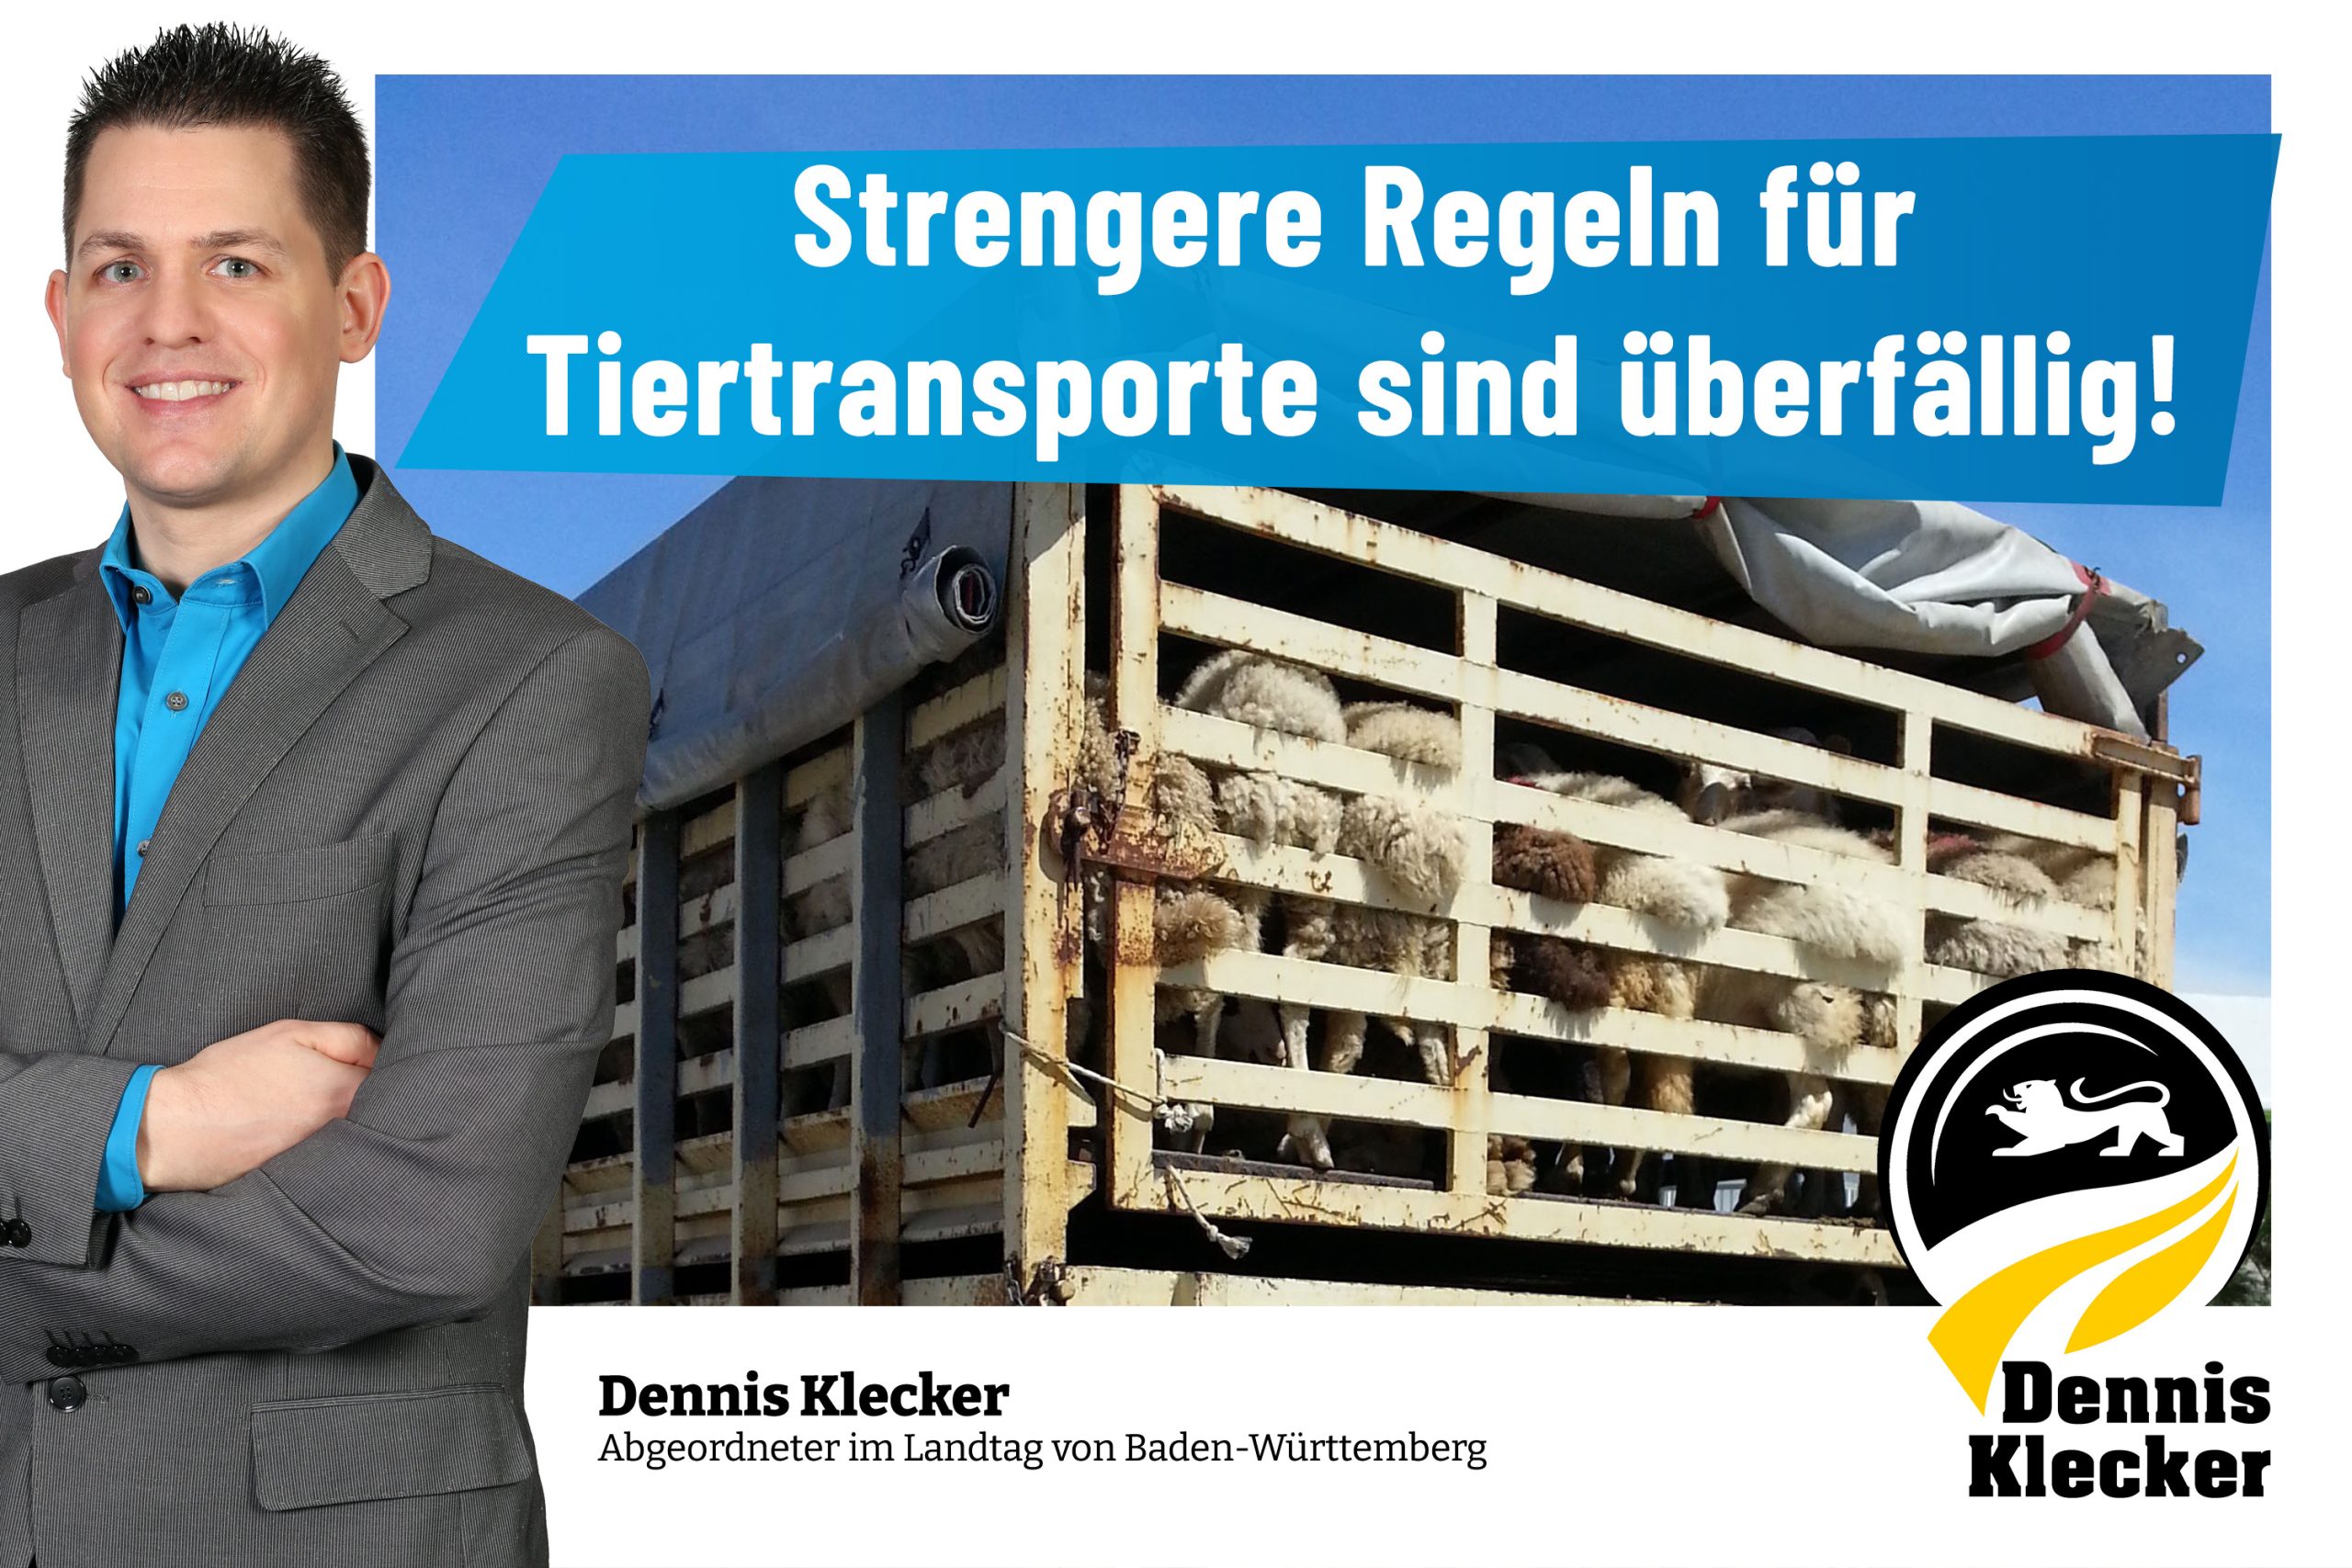 Dennis Klecker: Strengere Regeln für Tiertransporte sind überfällig!